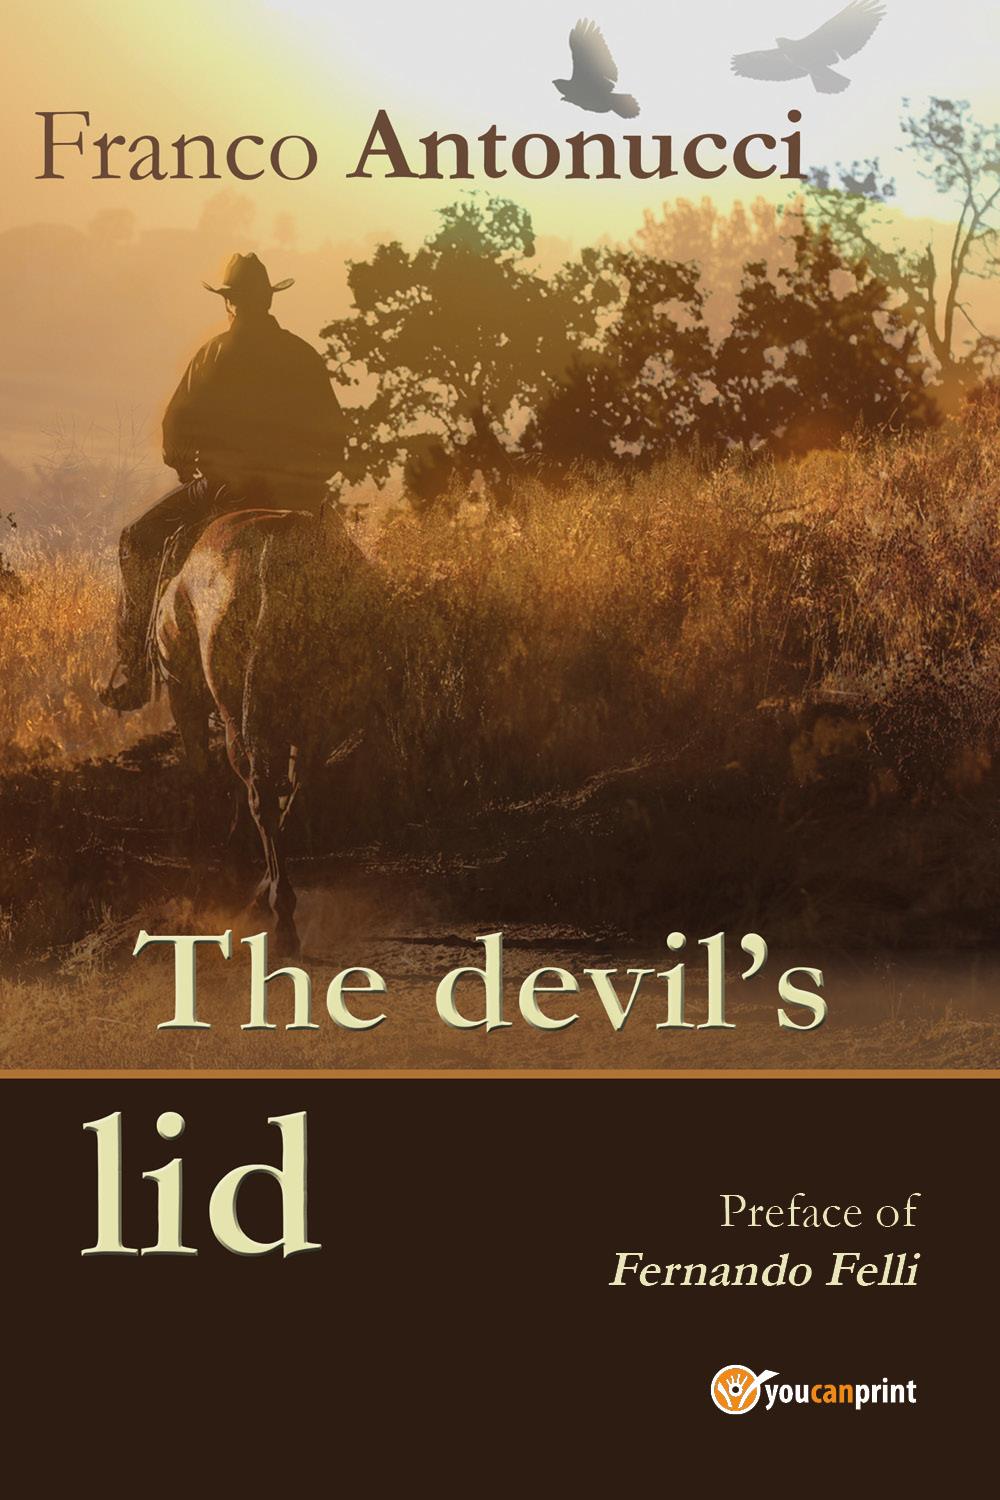 The devil's lid